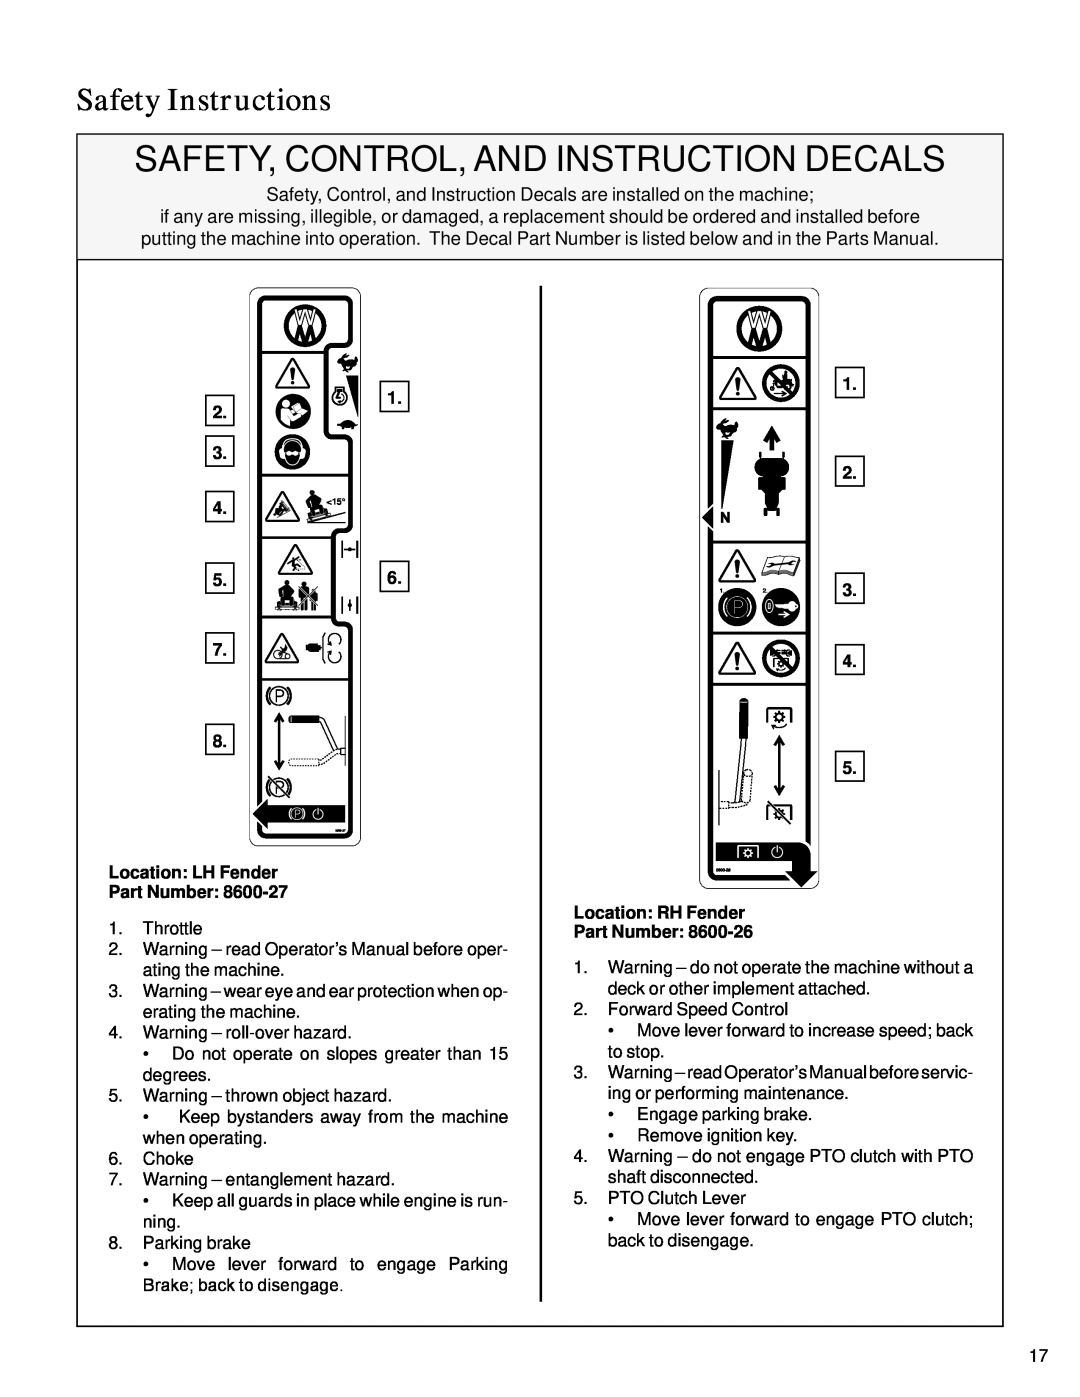 Walker S14 manual 7 8 Location: LH Fender Part Number, 4 5 Location: RH Fender Part Number, Safety Instructions 